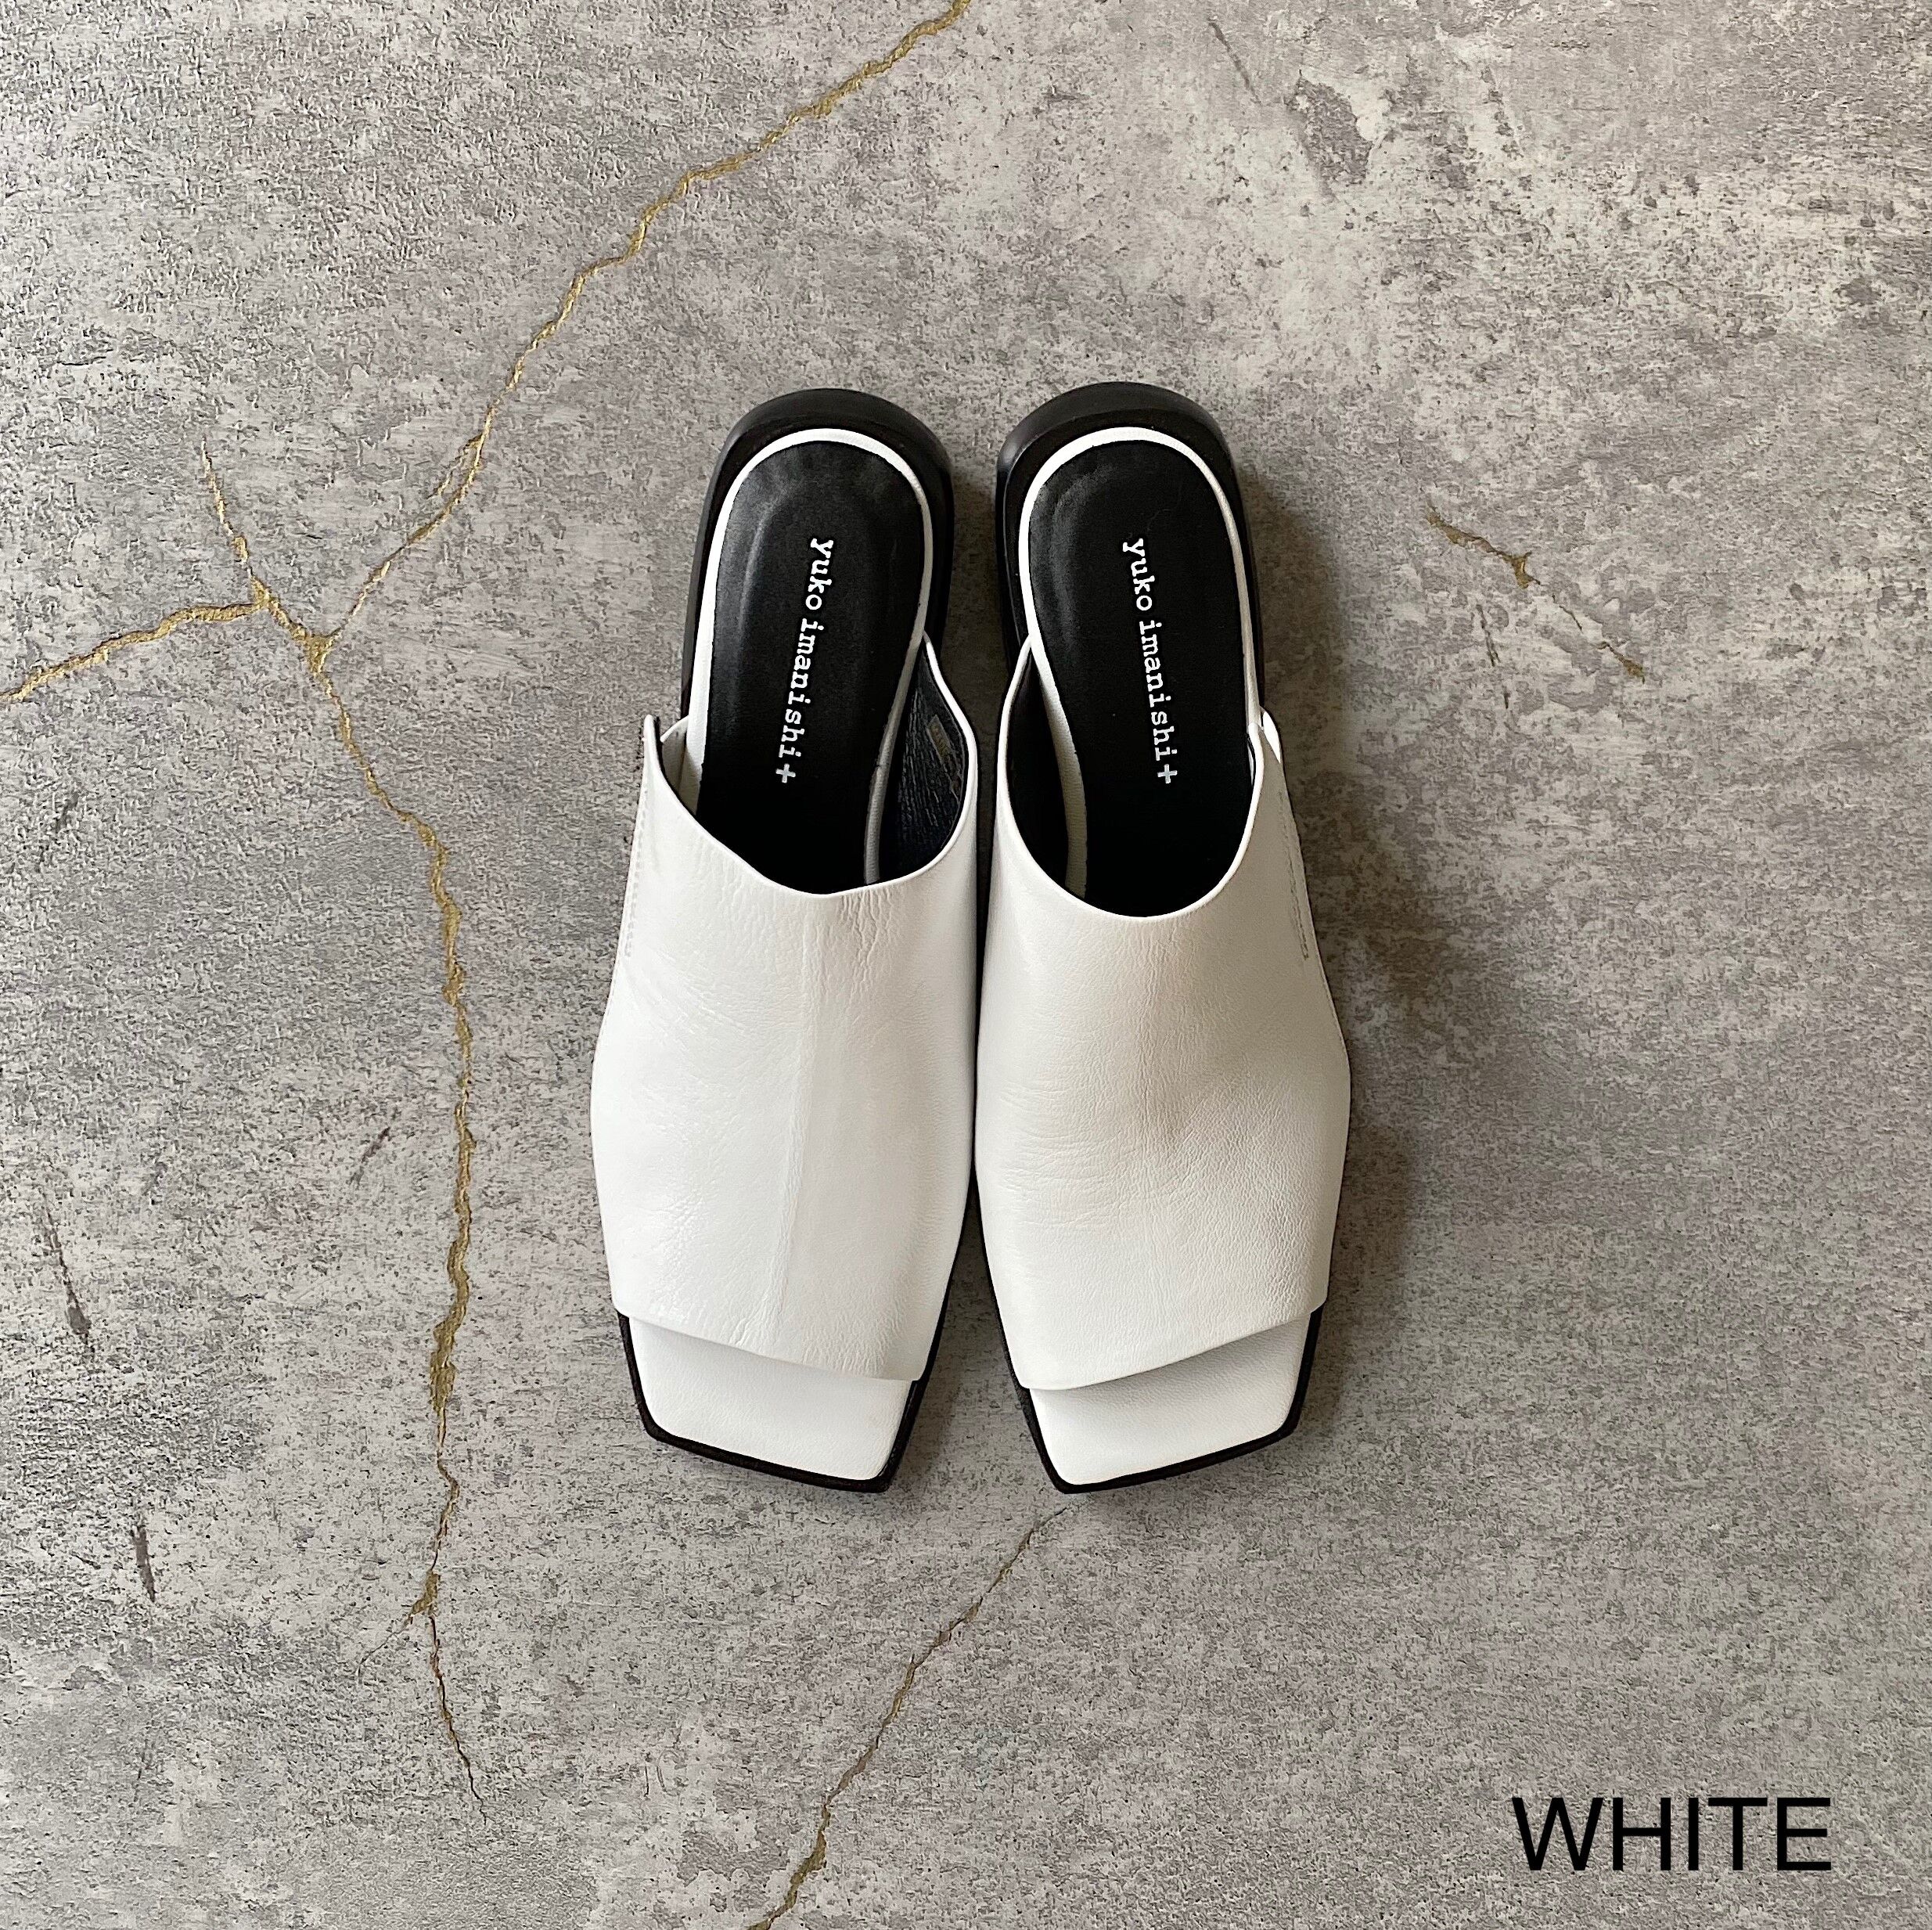 WHITE / 35 (22.2cm)